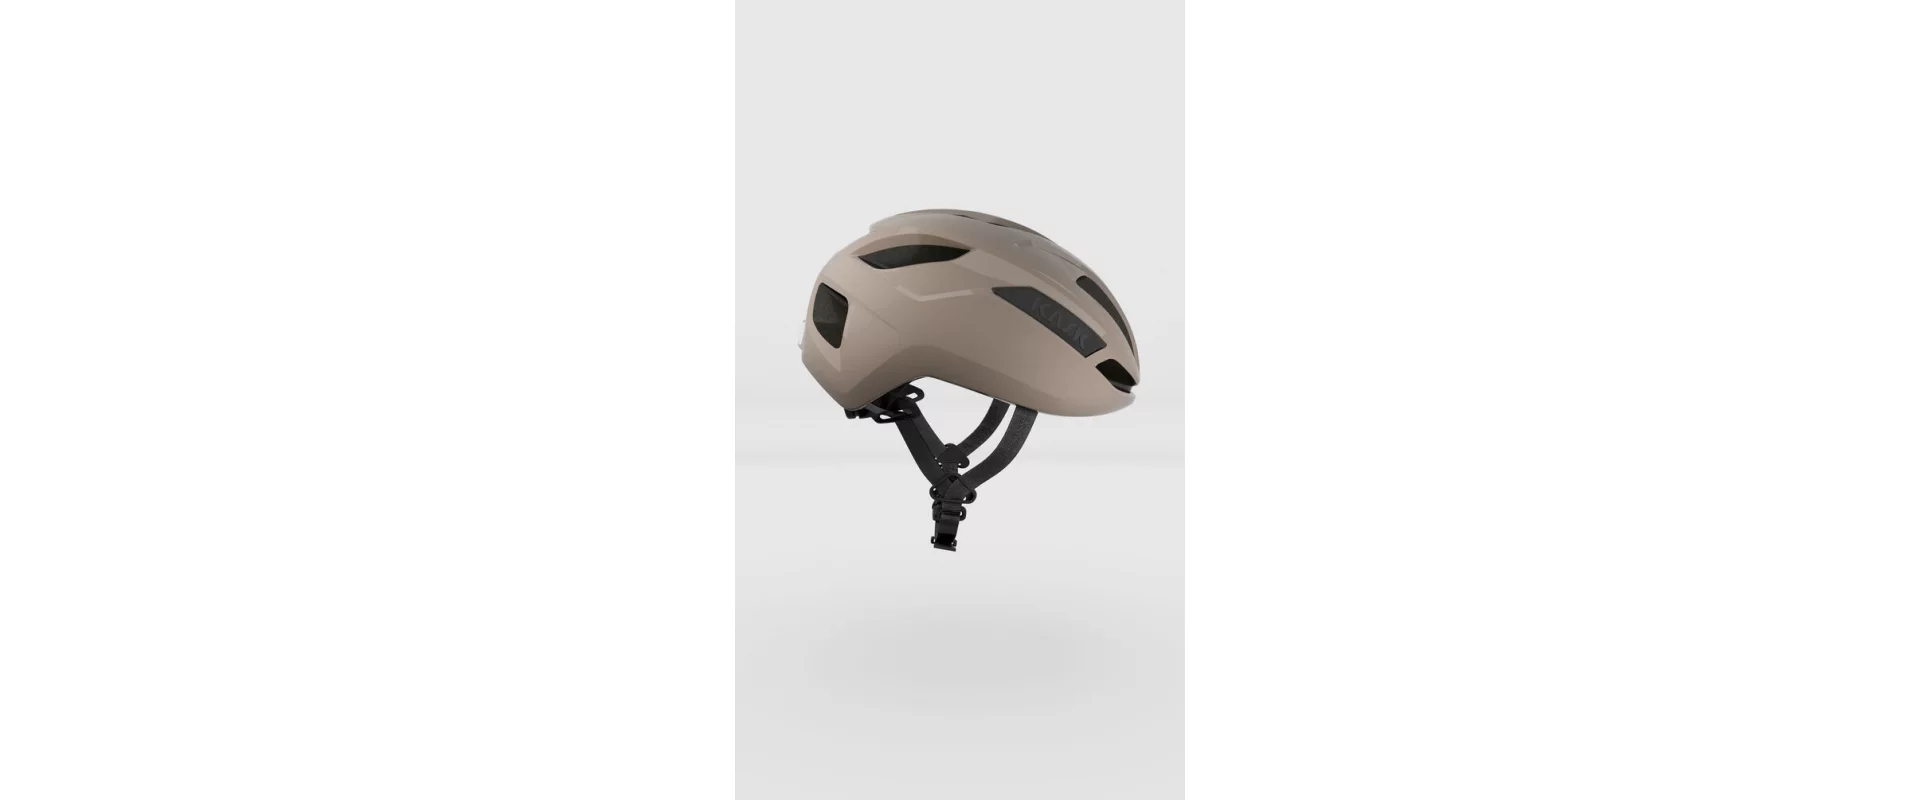 Kask Sintesi Sahara / Шлем велосипедный фото 1